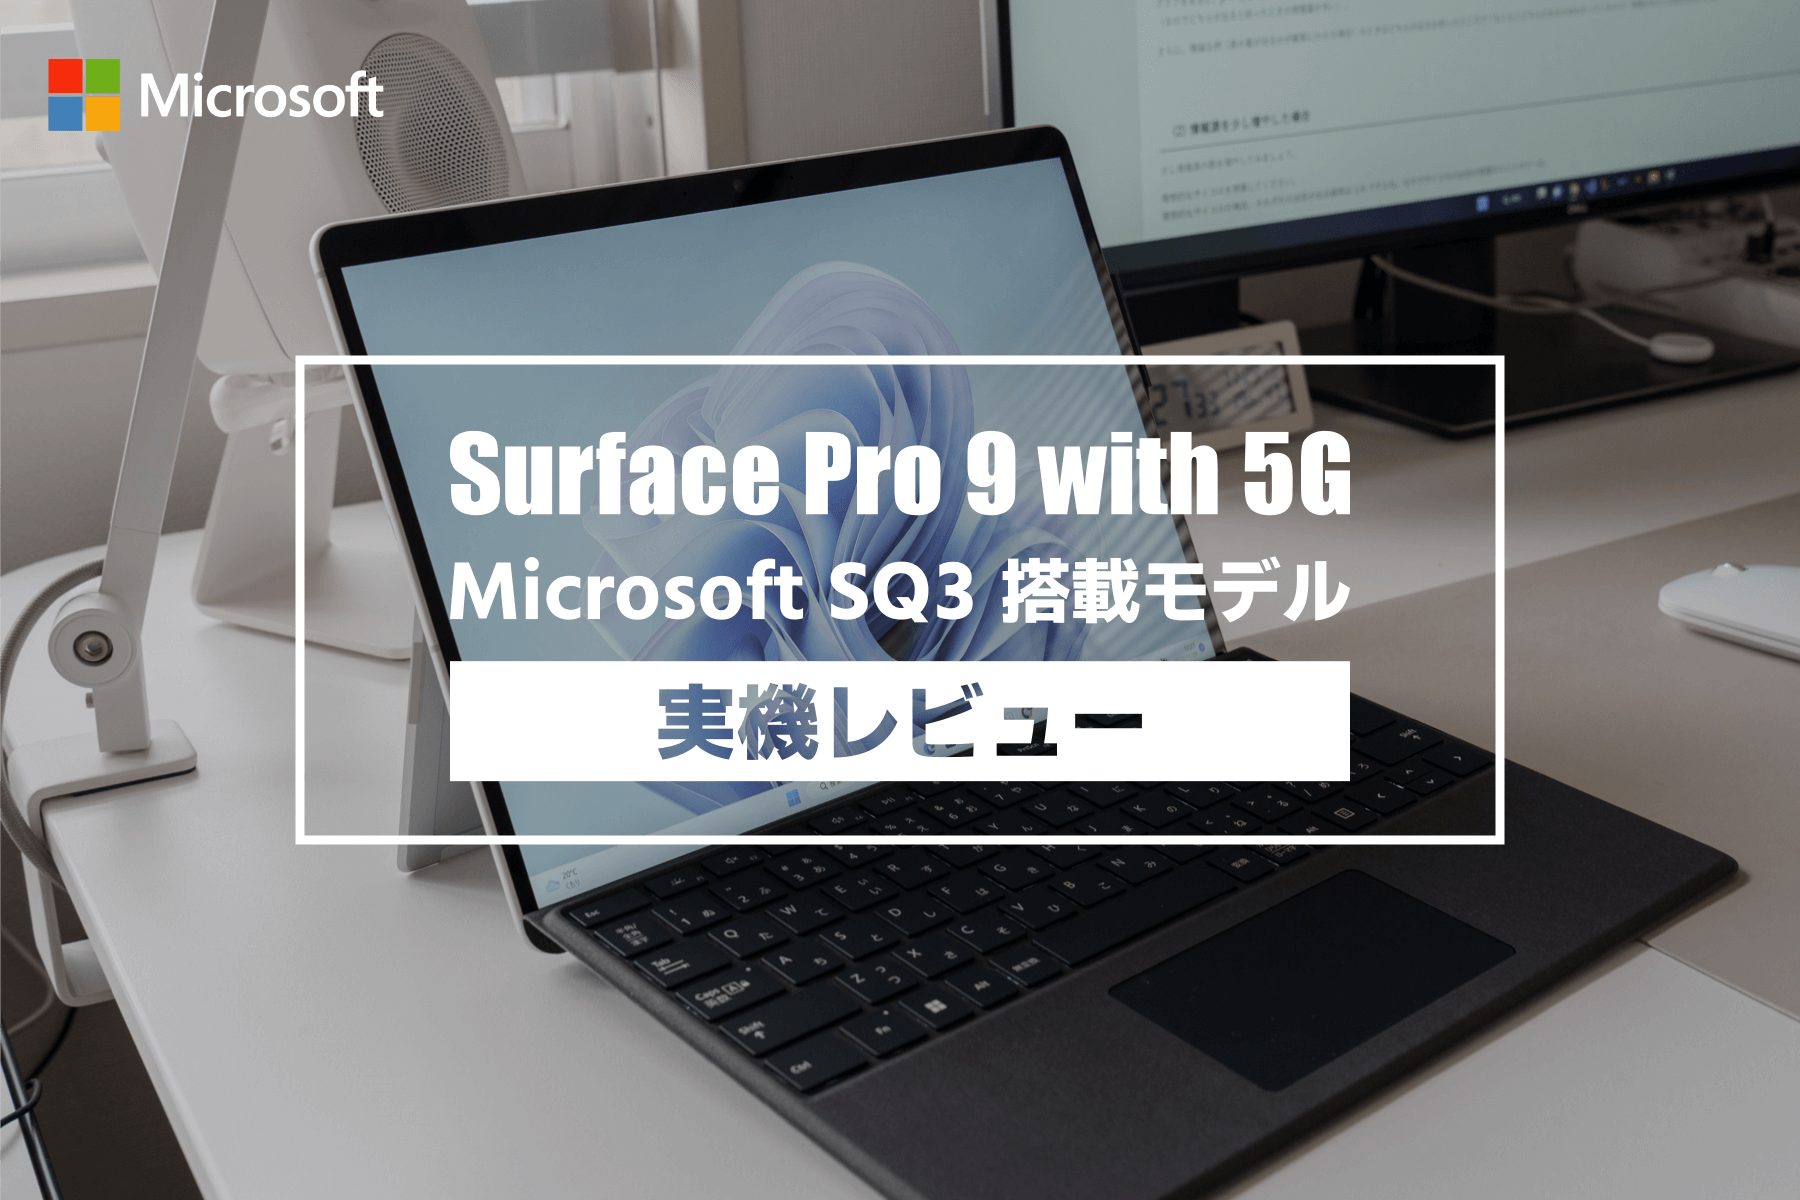 【レビュー】Surface Pro 9 Microsoft SQ3 搭載 5G モデル。ビジネス用途での使い勝手はどうか？Intel 版との違いなど